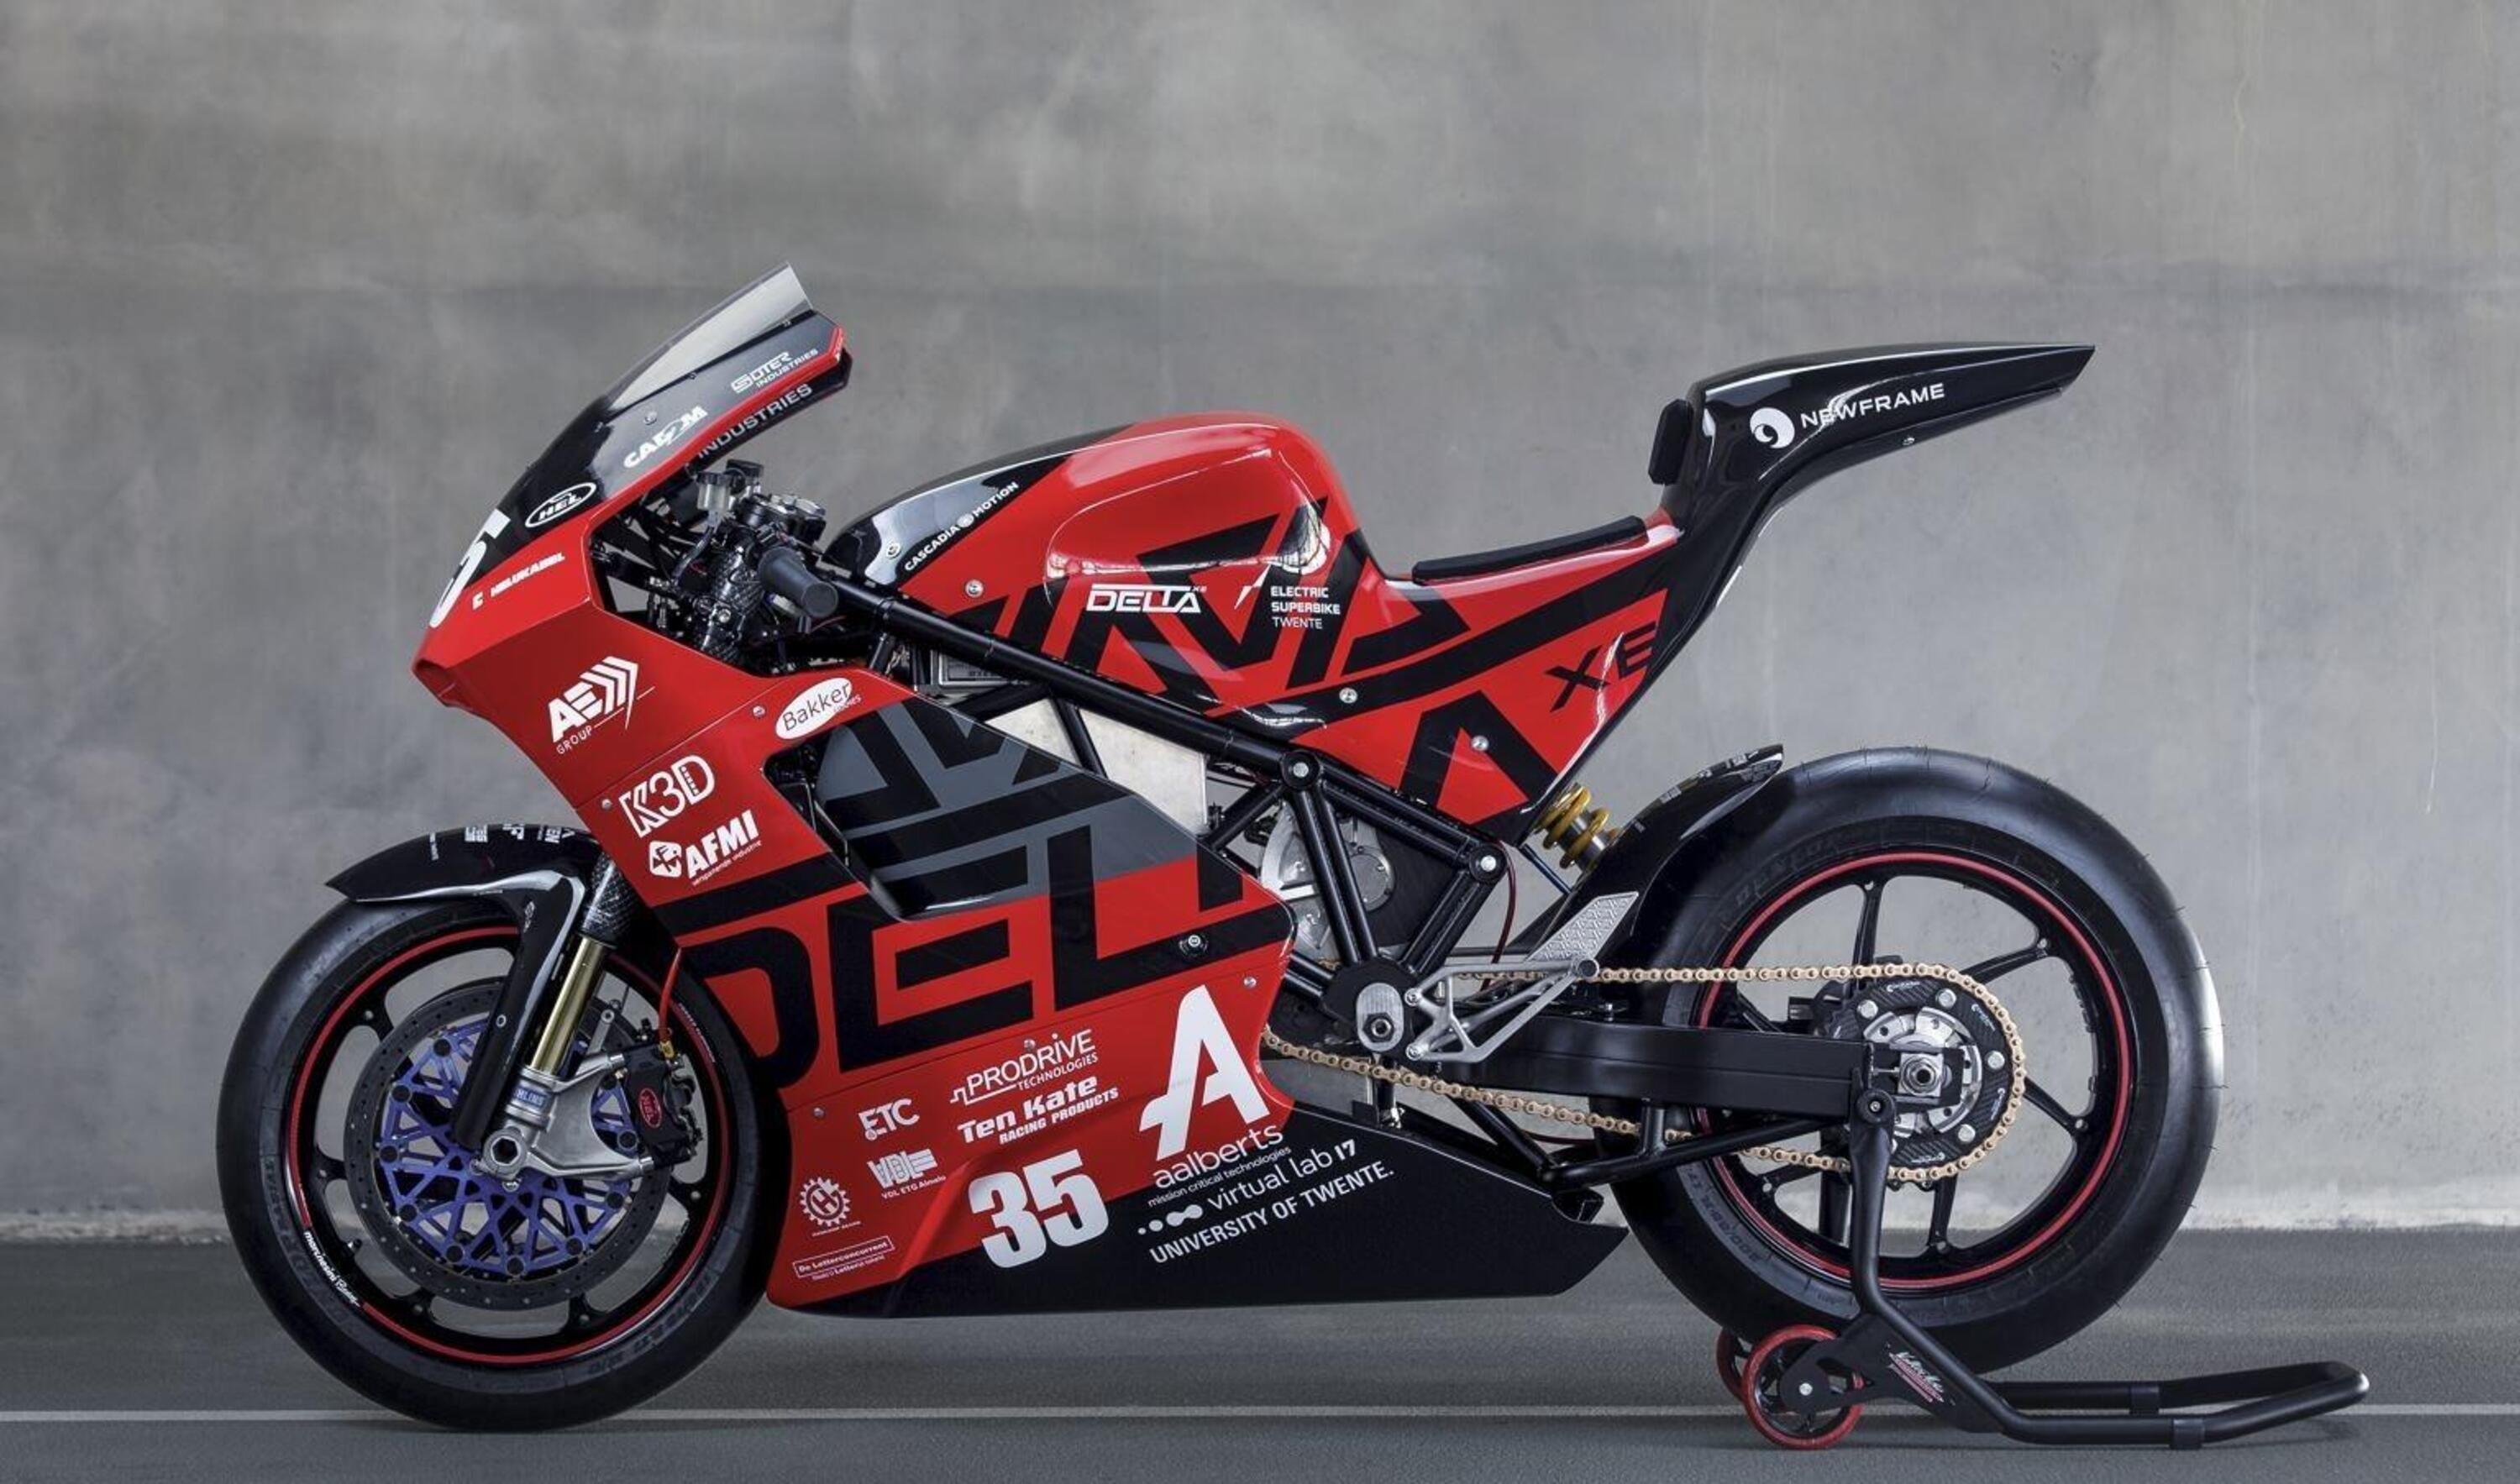 Delta-XE la superbike elettrica, da 300 km/h, degli studenti olandesi